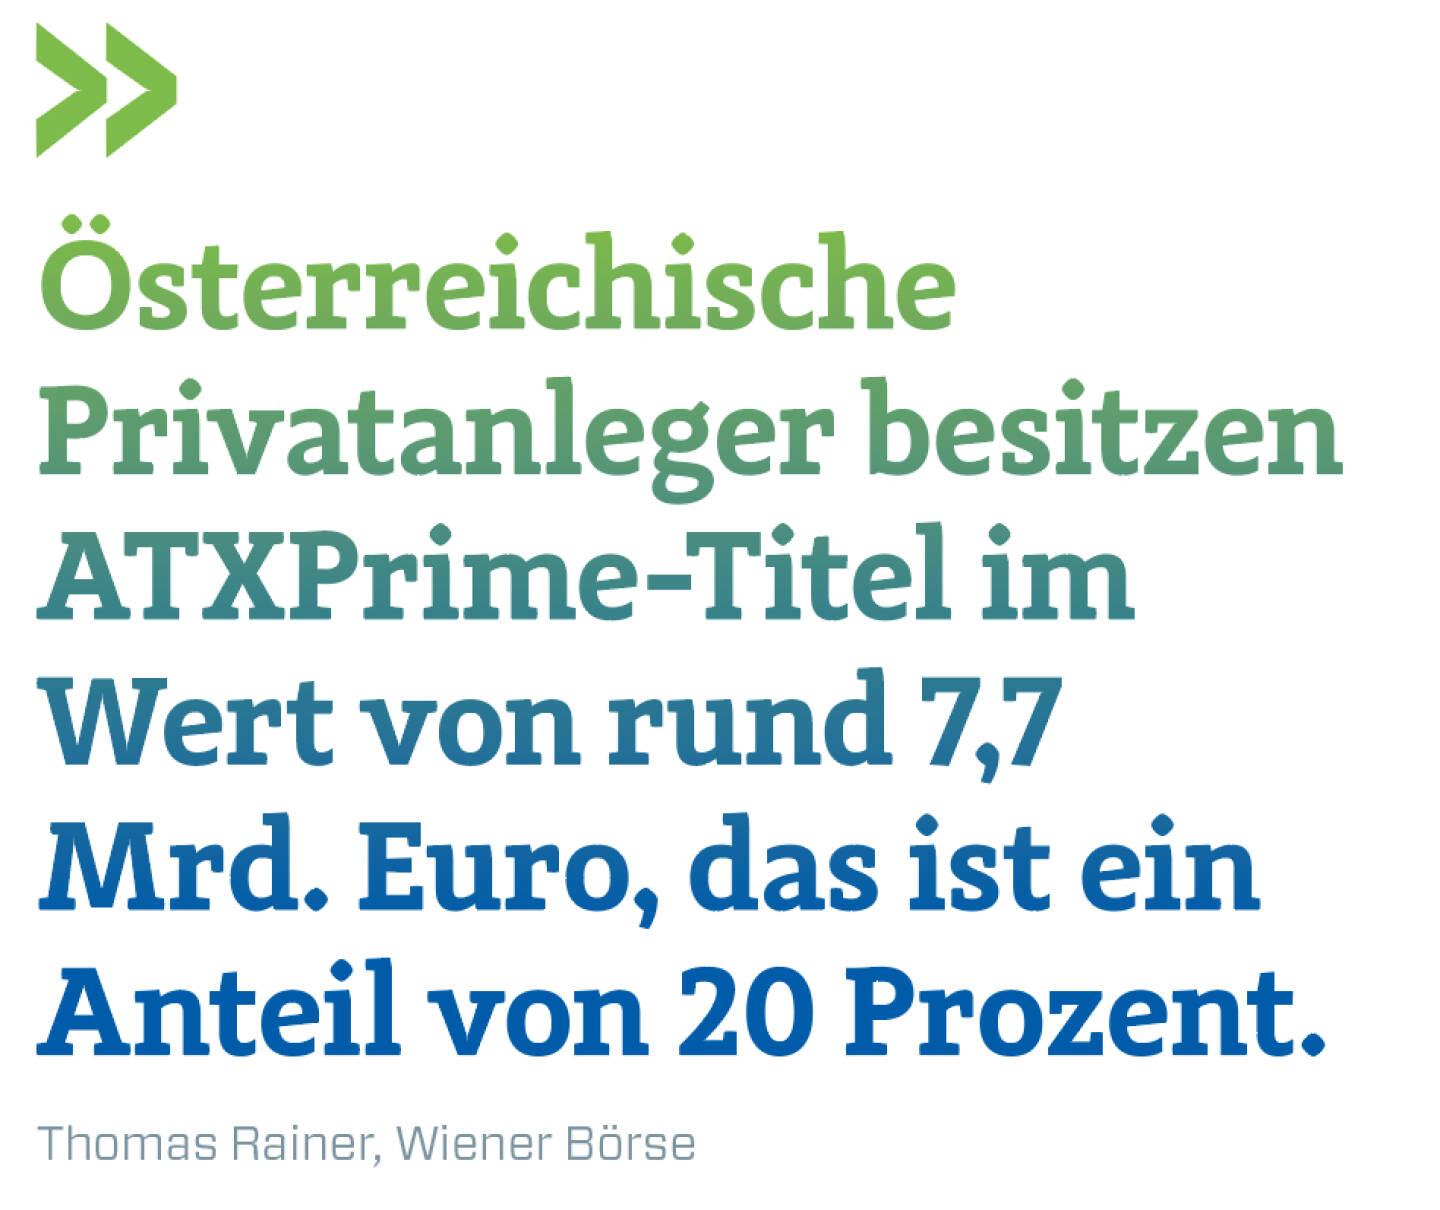 Österreichische Privatanleger besitzen ATXPrime-Titel im Wert von rund 7,7 Mrd. Euro, das ist ein Anteil von 20 Prozent. 
Thomas Rainer, Wiener Börse